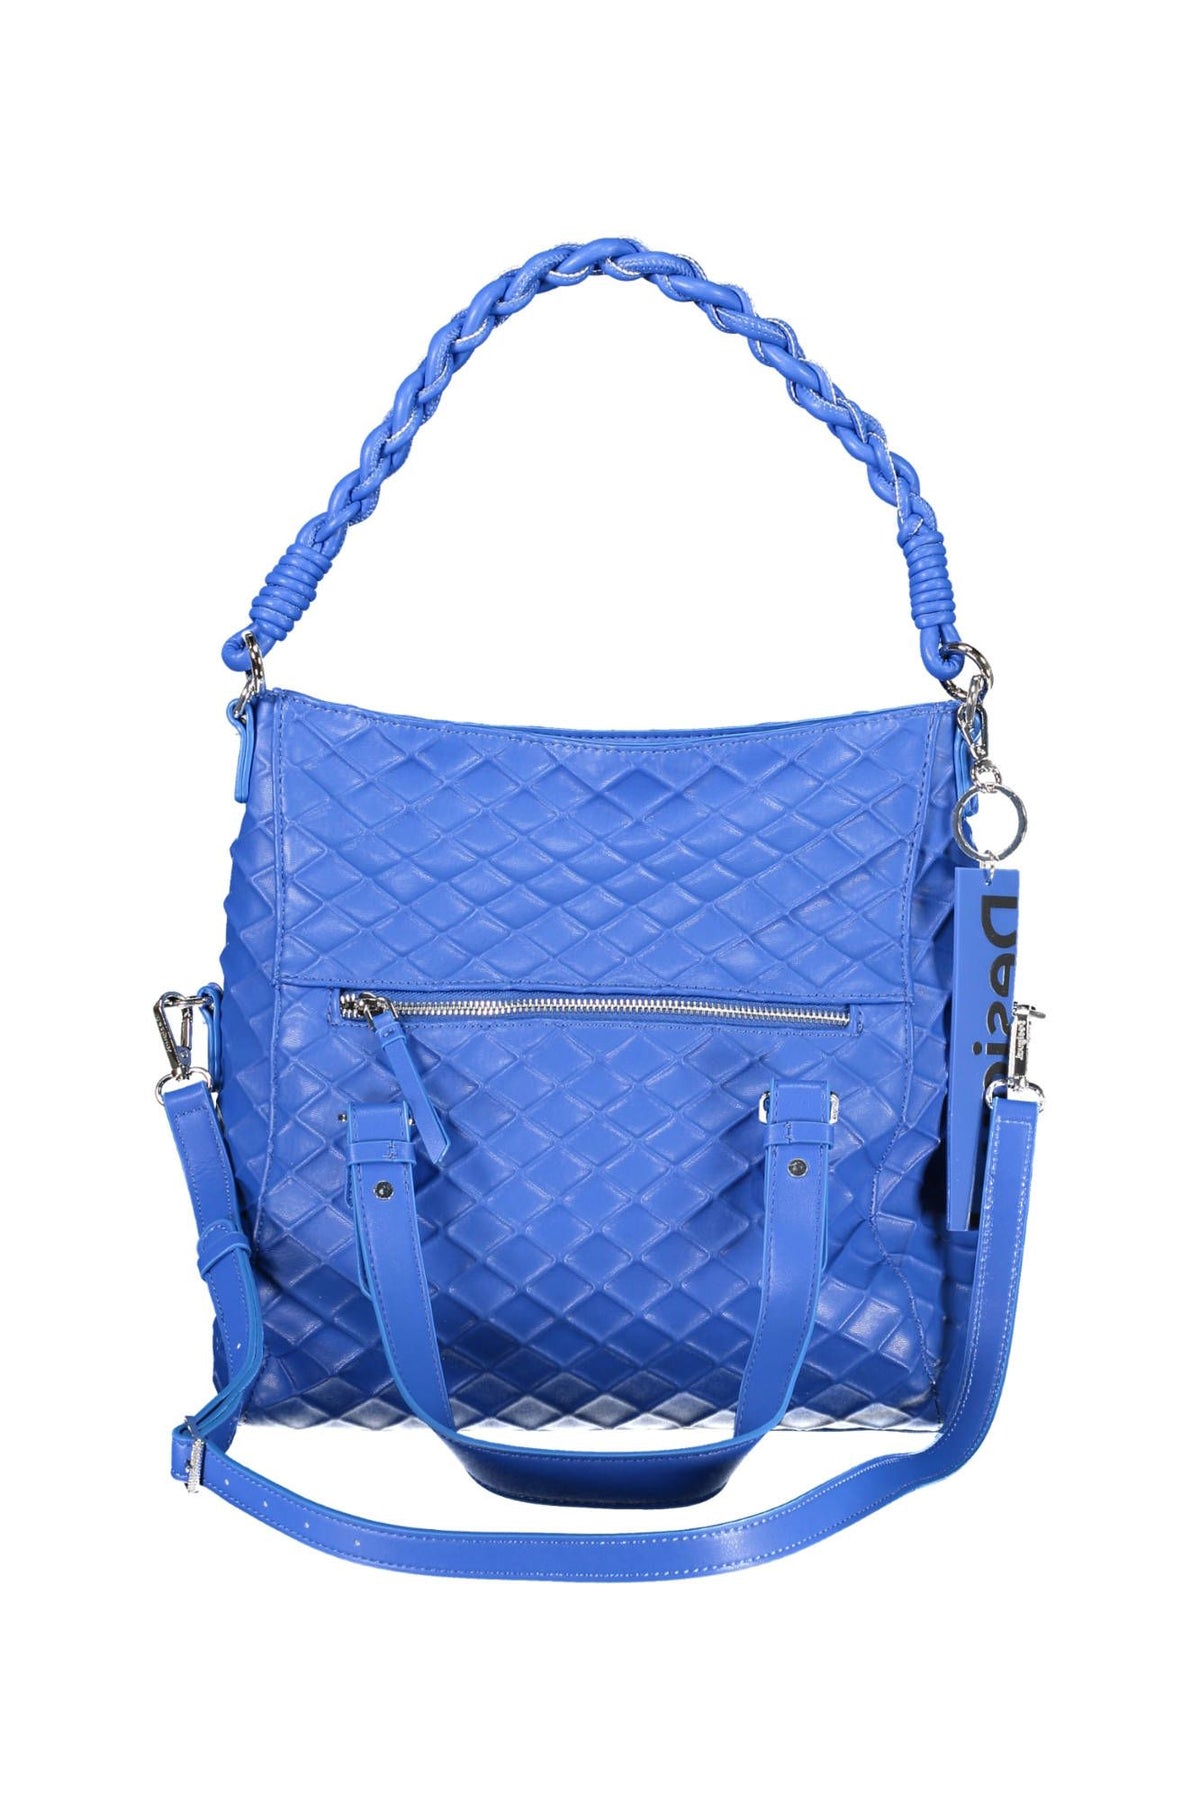 Desigual – Schicke Handtasche mit Kontrastdetails in Blau